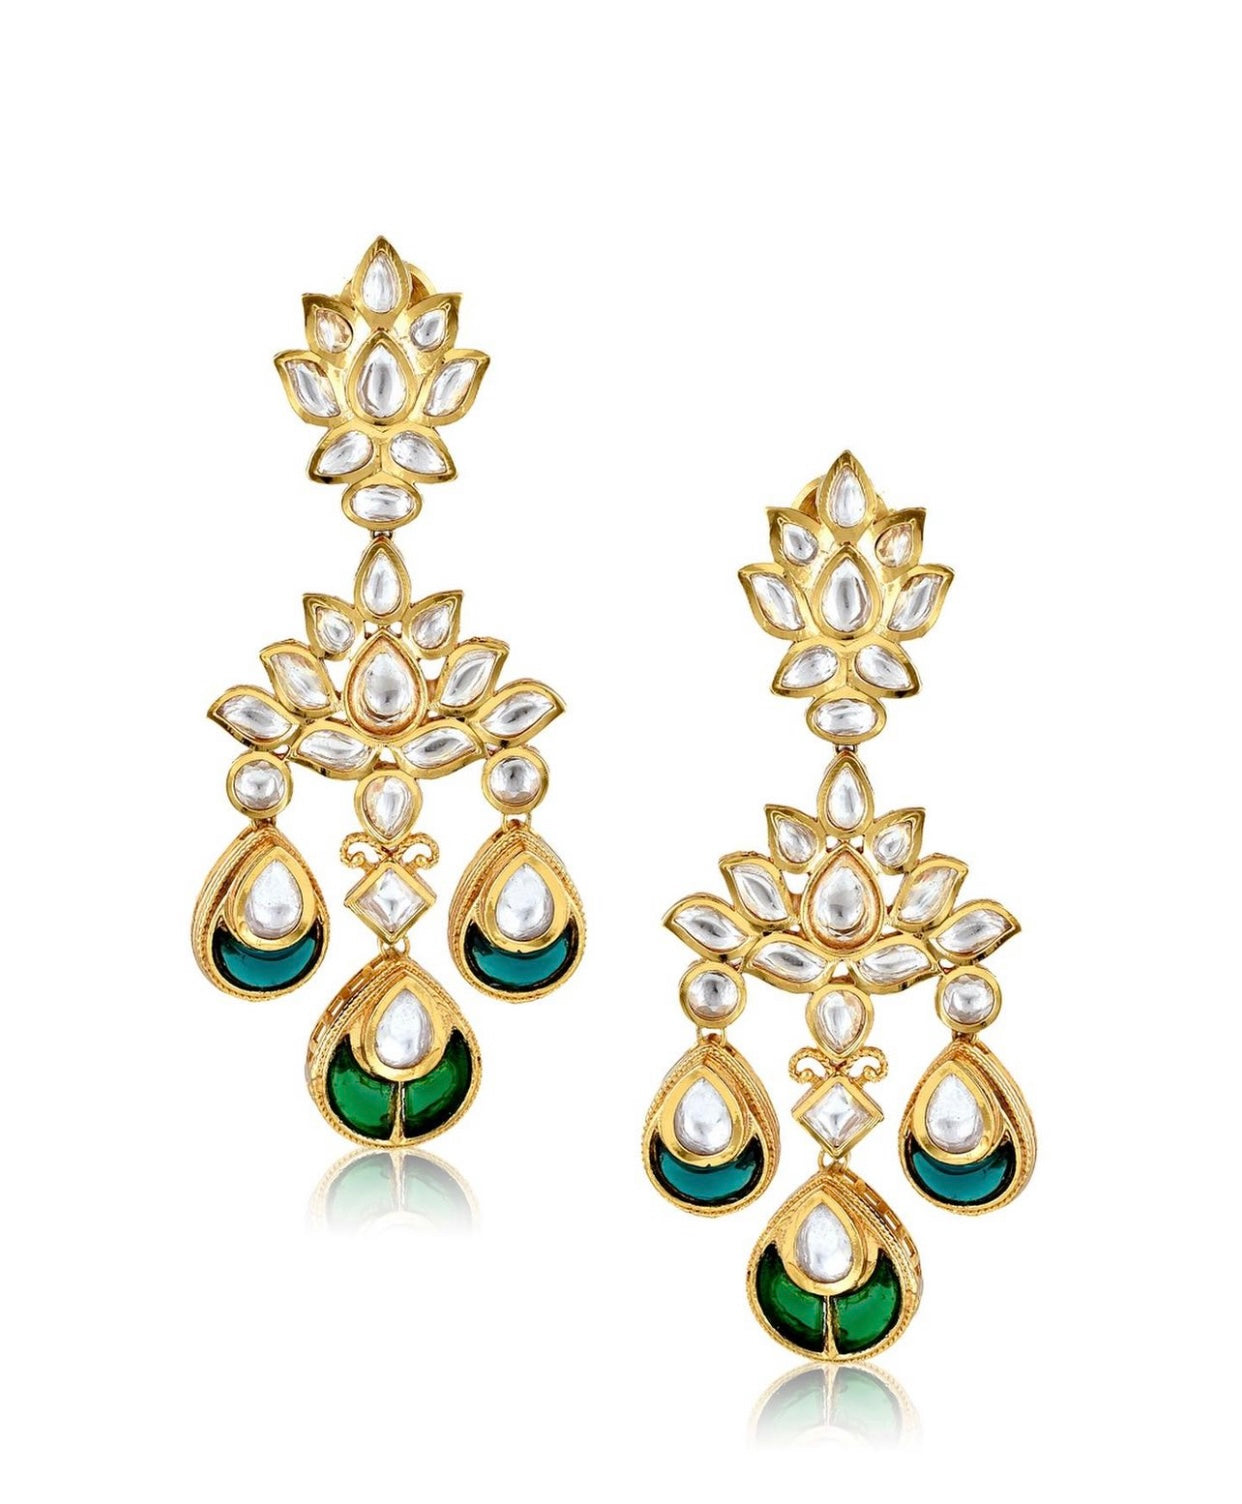 THE BUTTERFLY EFFECT JEWELRY - Lotus Cut Kundan with emerald stones Dangler Earrings